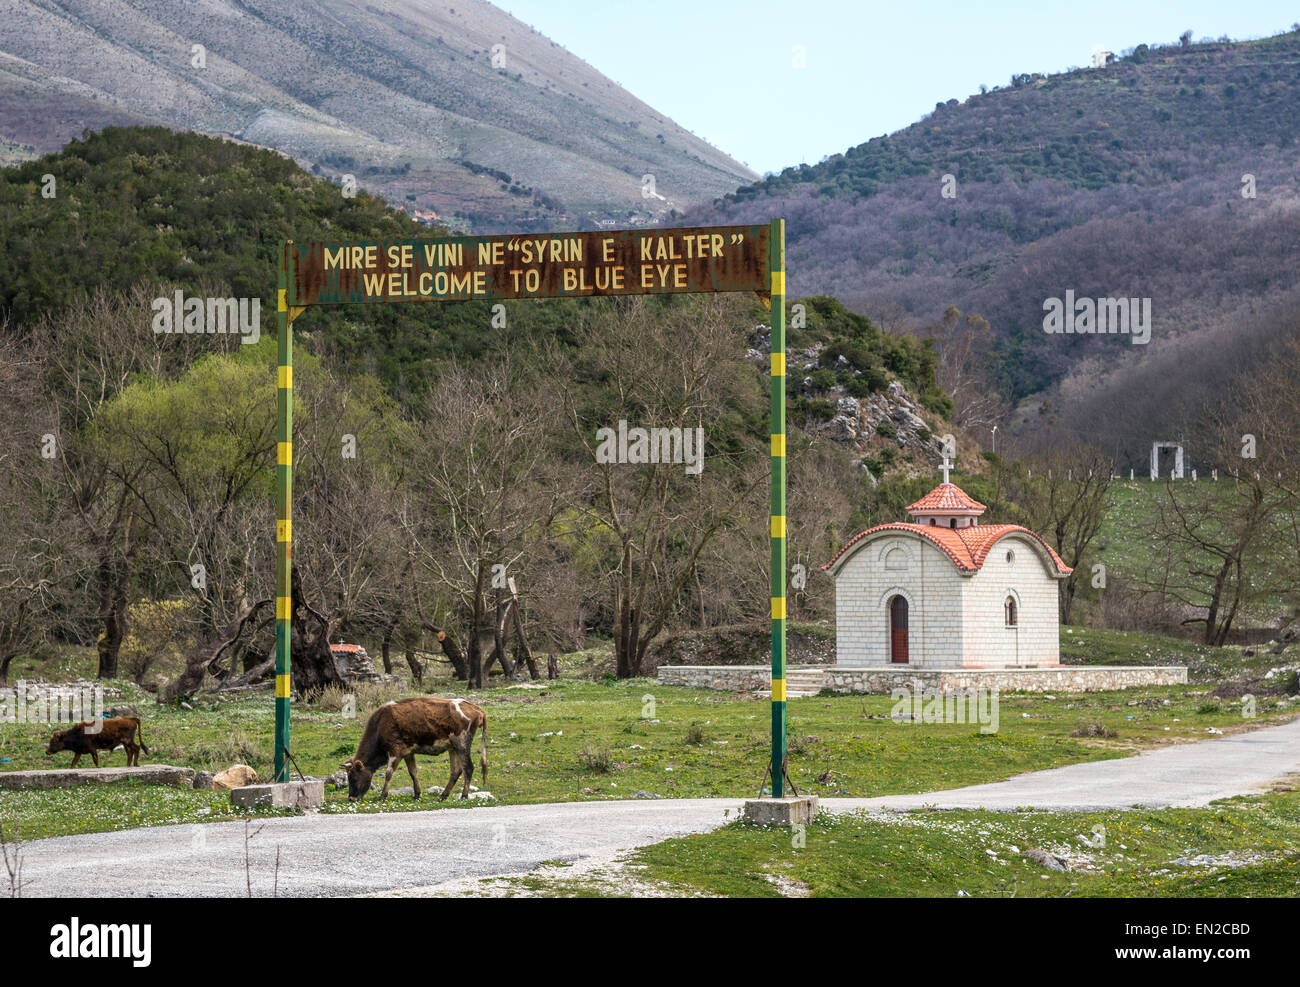 Cartel de bienvenida a la entrada de la primavera cerca Delvine ojo azul en el sur de Albania. Foto de stock